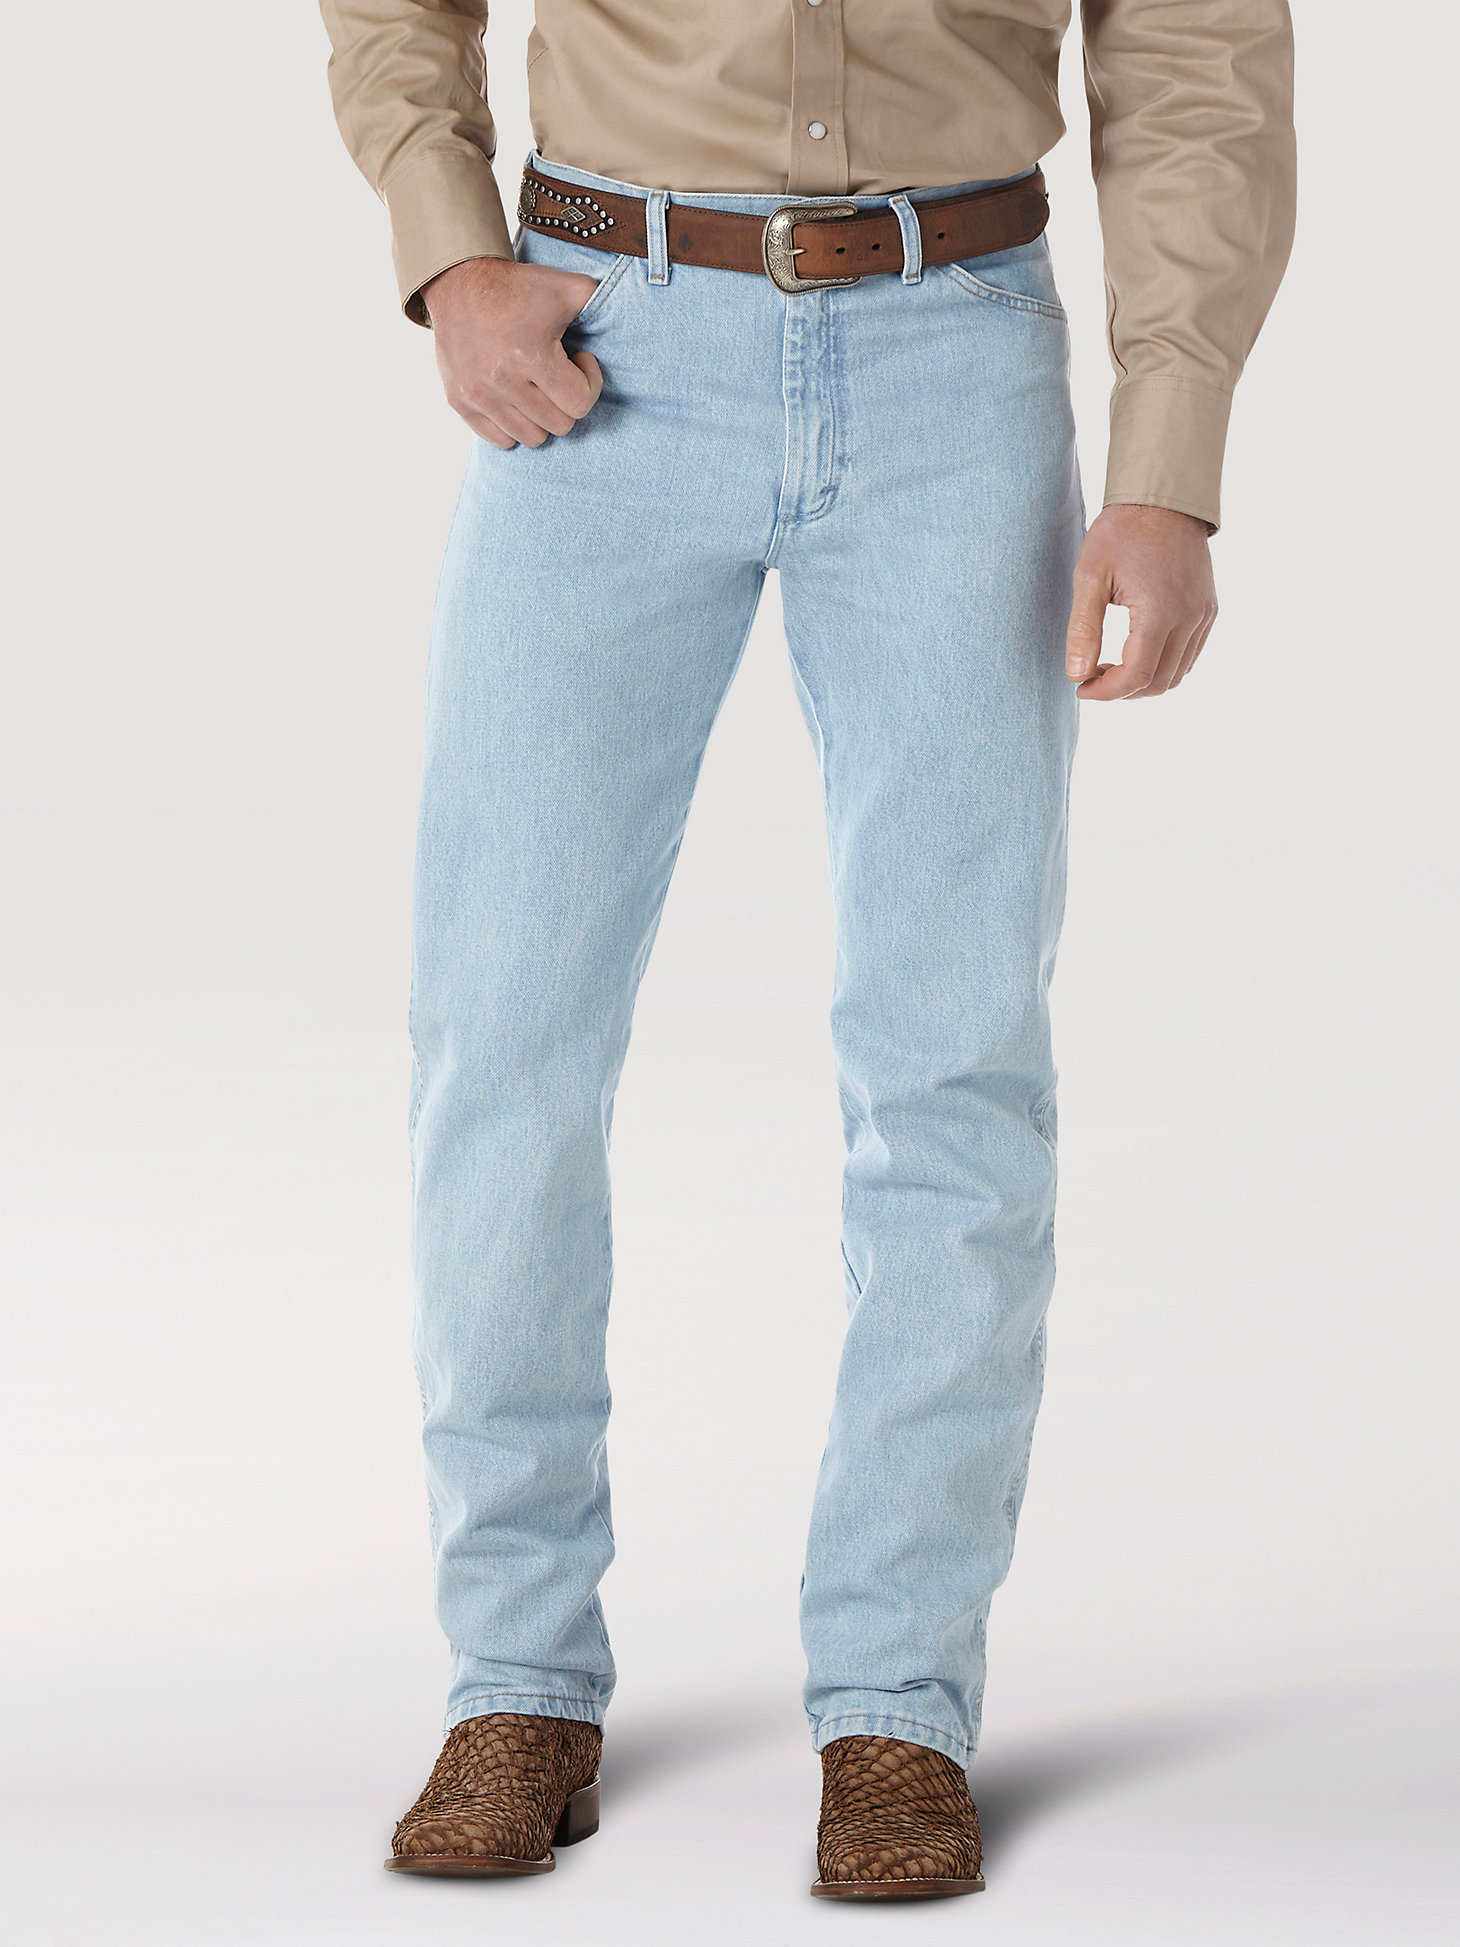 Wrangler® Cowboy Cut® Original Fit Jean in Bleach alternative view 3